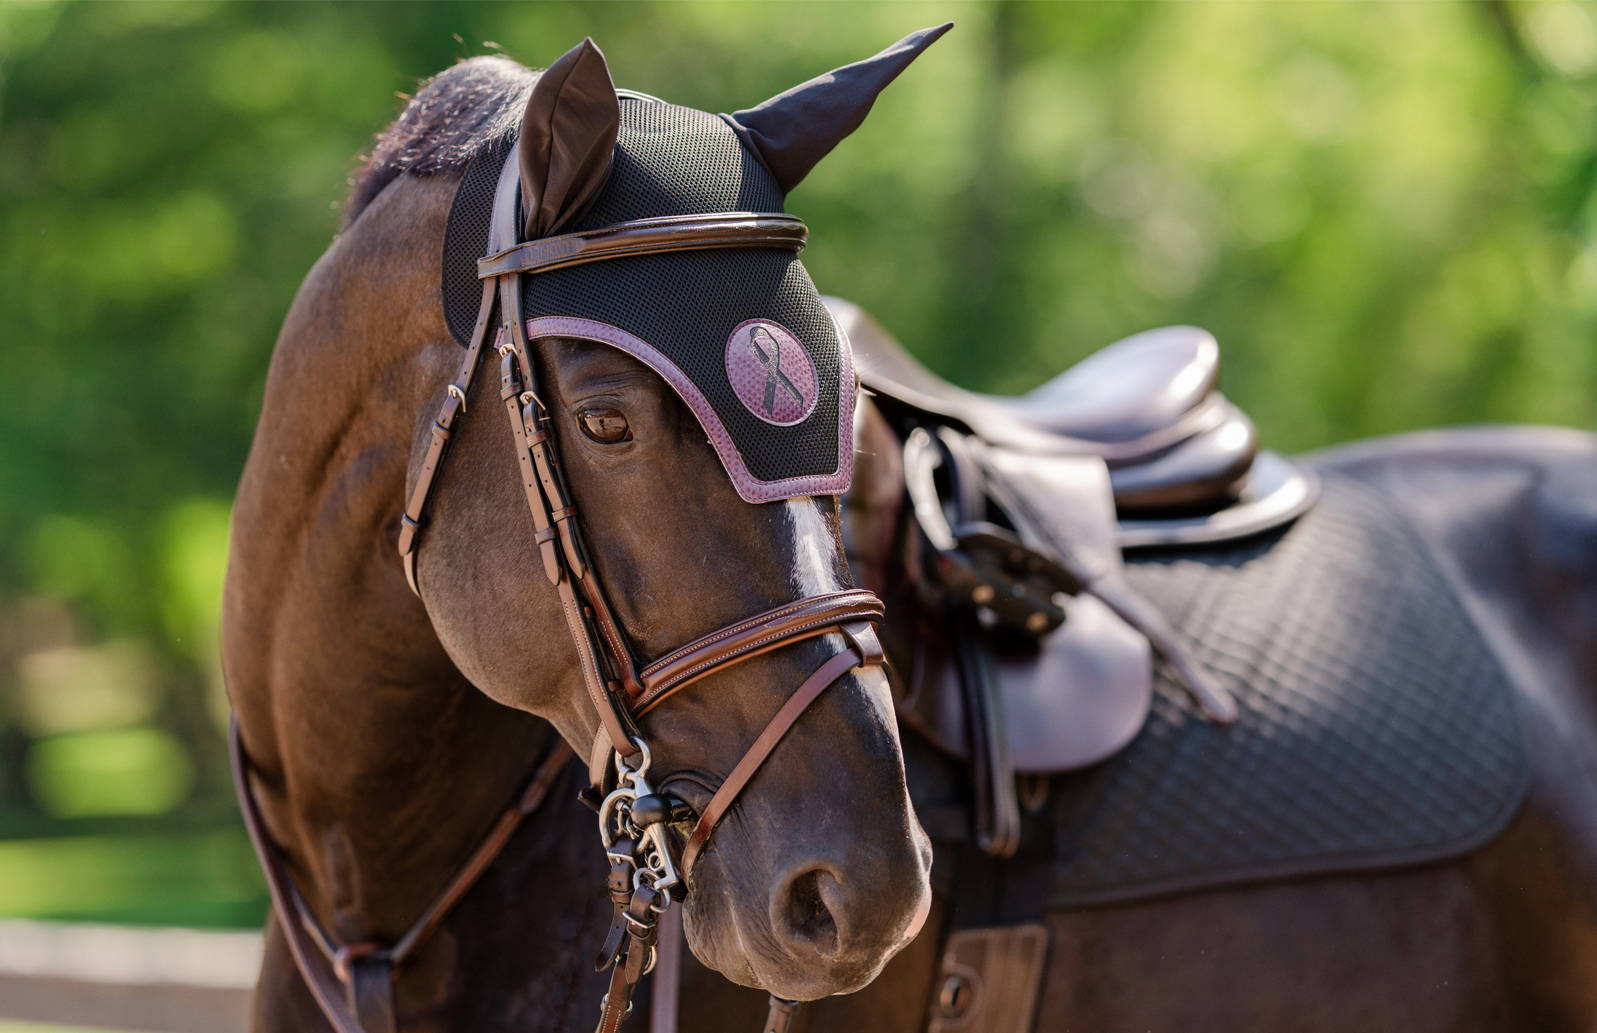 Custom Ear Bonnet on a horse